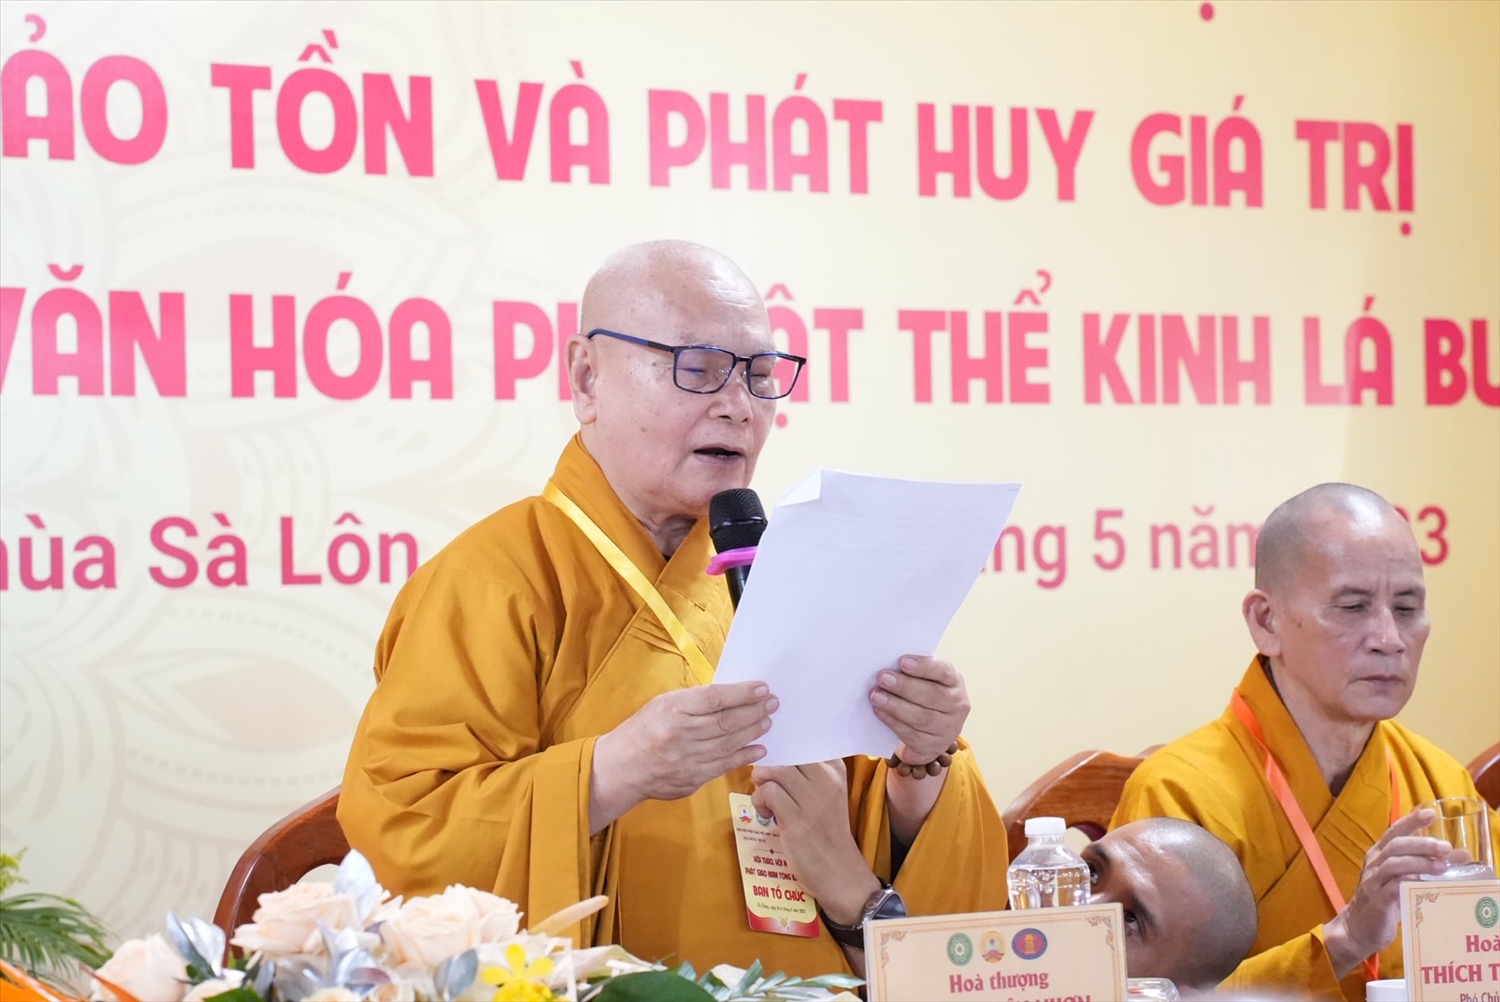  Hòa thượng Thích Thiện Nhơn – Chủ tịch HĐTS GHPGVN, Trưởng ban Tổ chức phát biểu chào mừng và khai mạc Hội thảo 